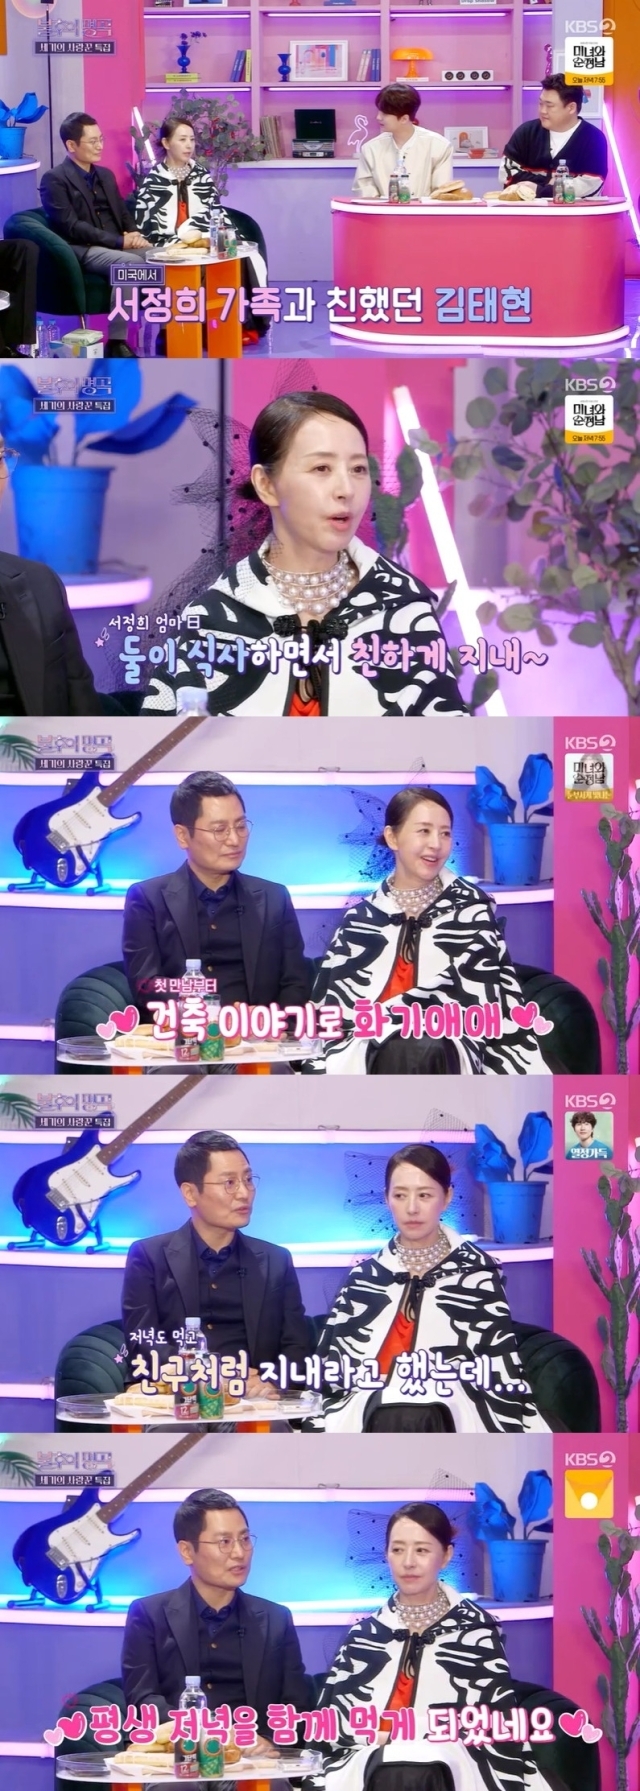 KBS 2TV '불후의 명곡' 방송 화면